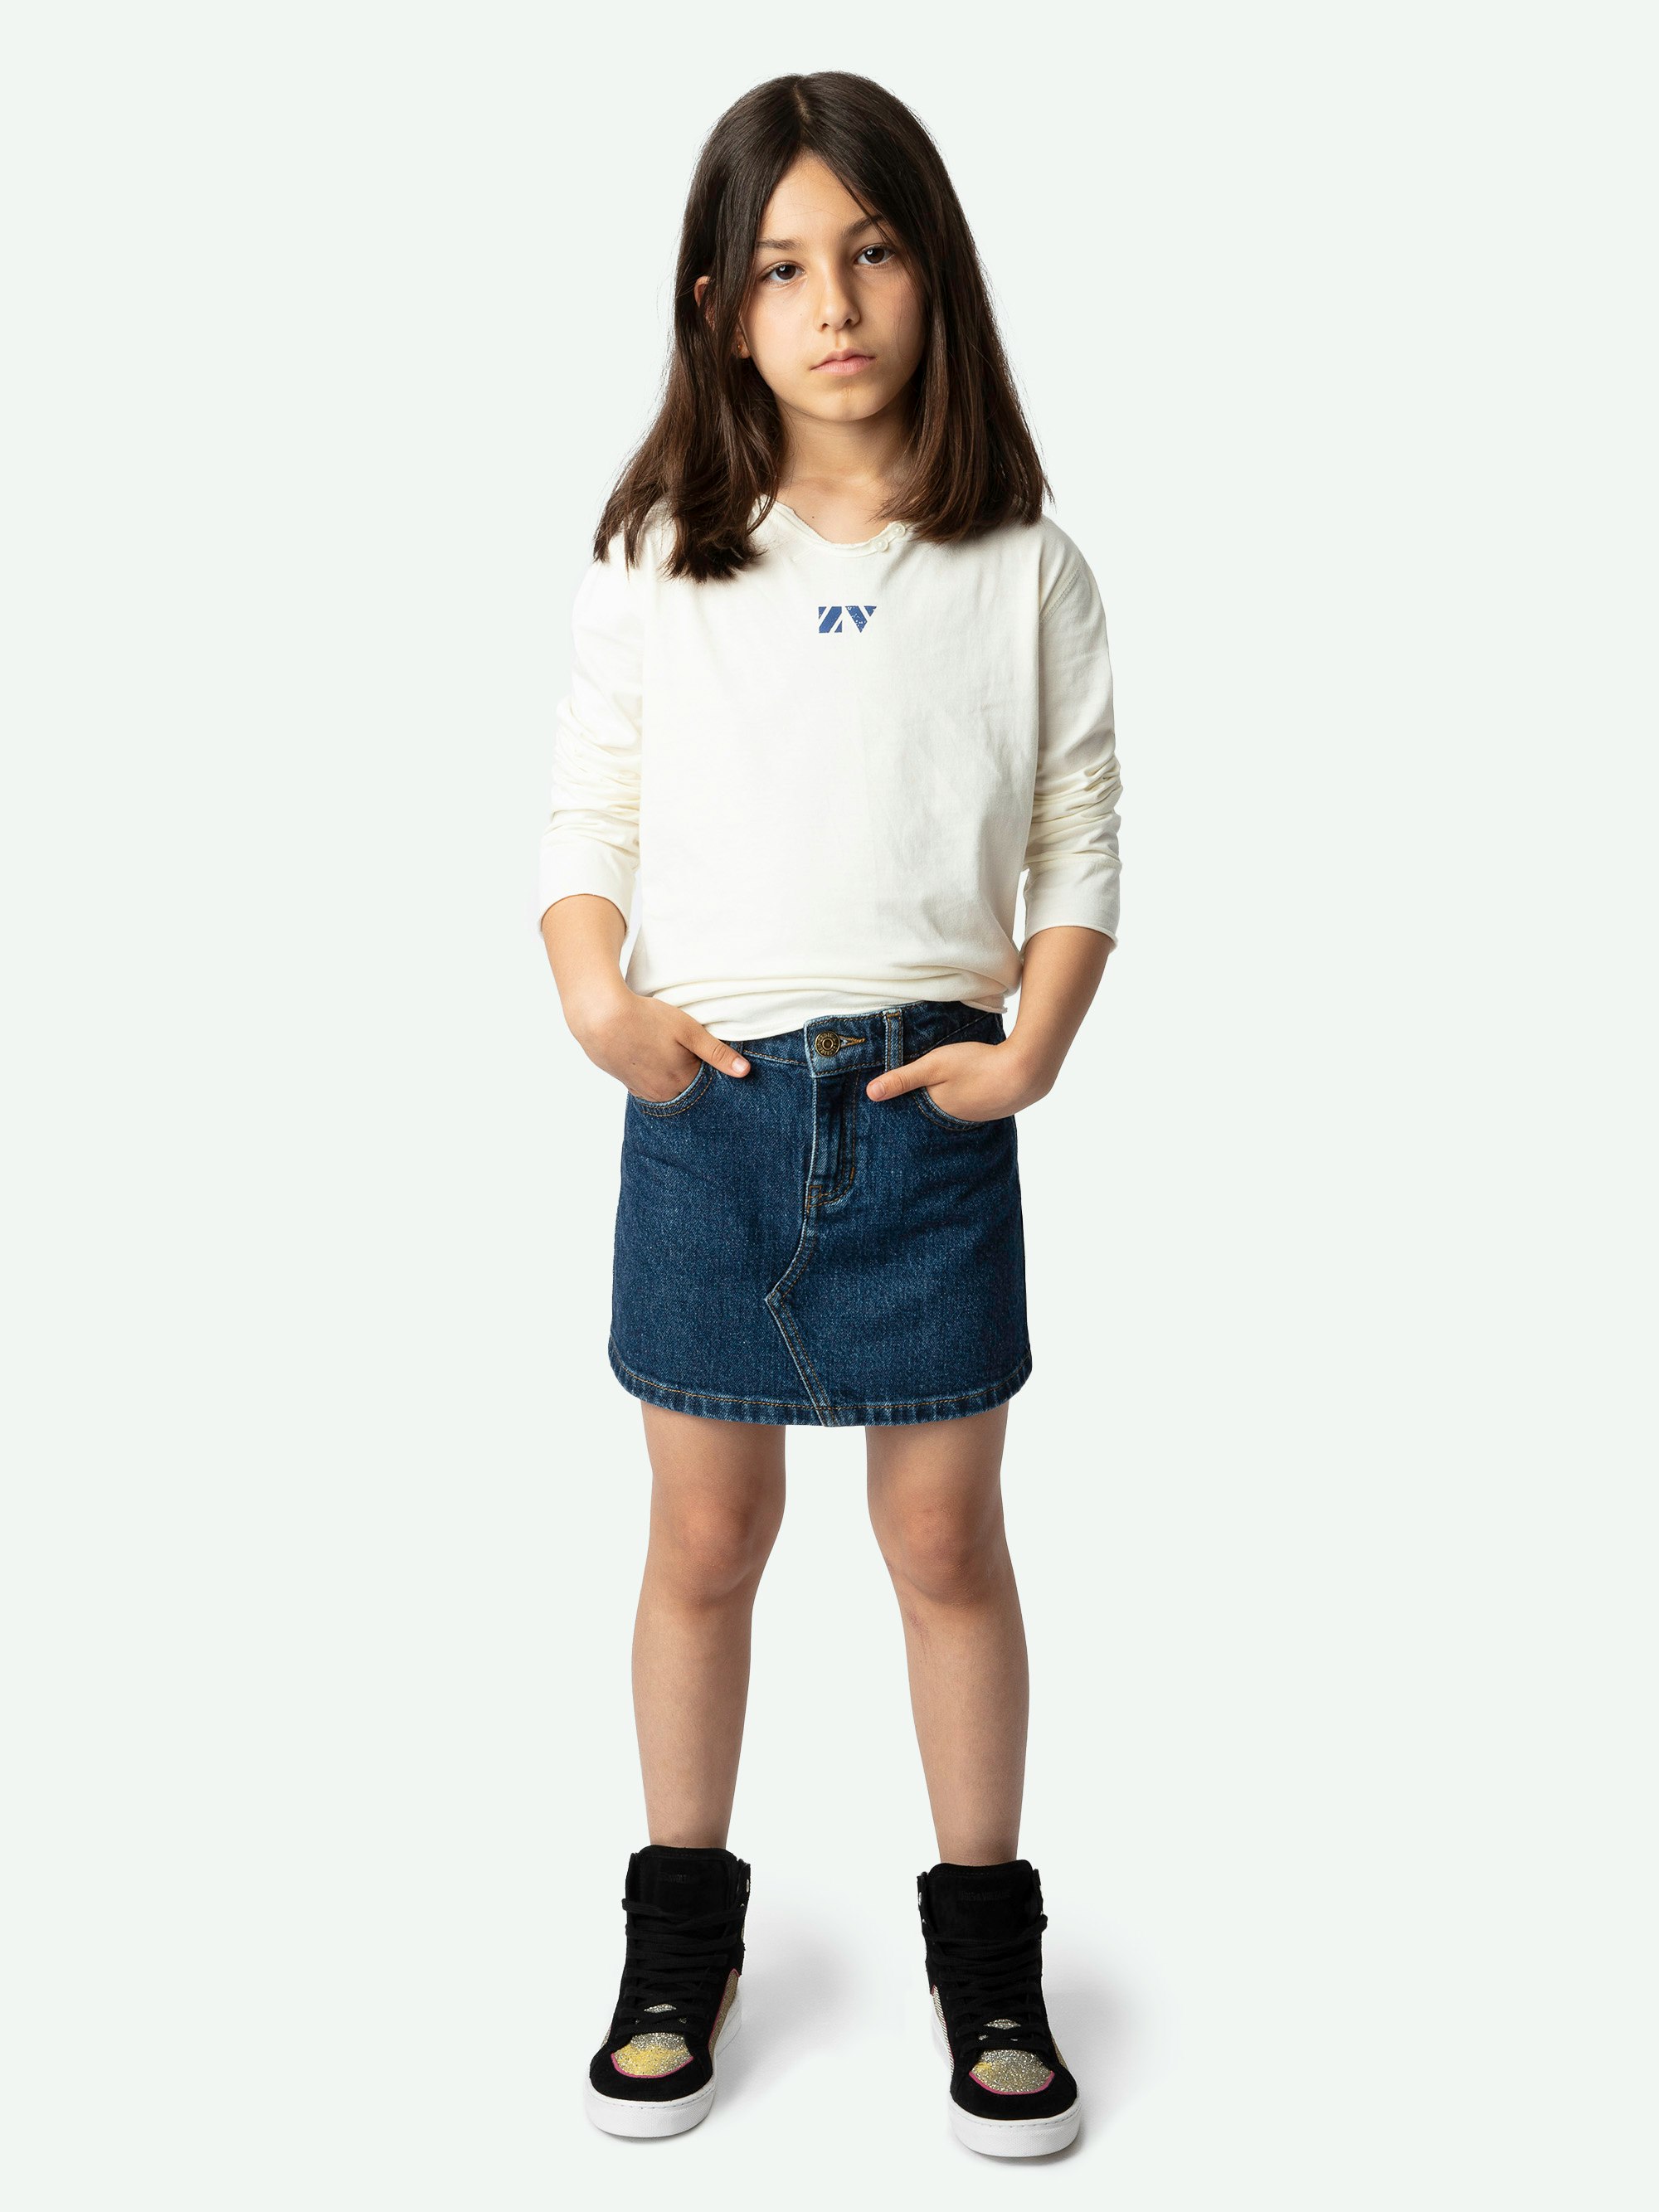 Camiseta Boxo Niña - Camiseta de punto de algodón ecológico de color crudo con cuello panadero, estampado floral y bordado en la manga para niña.